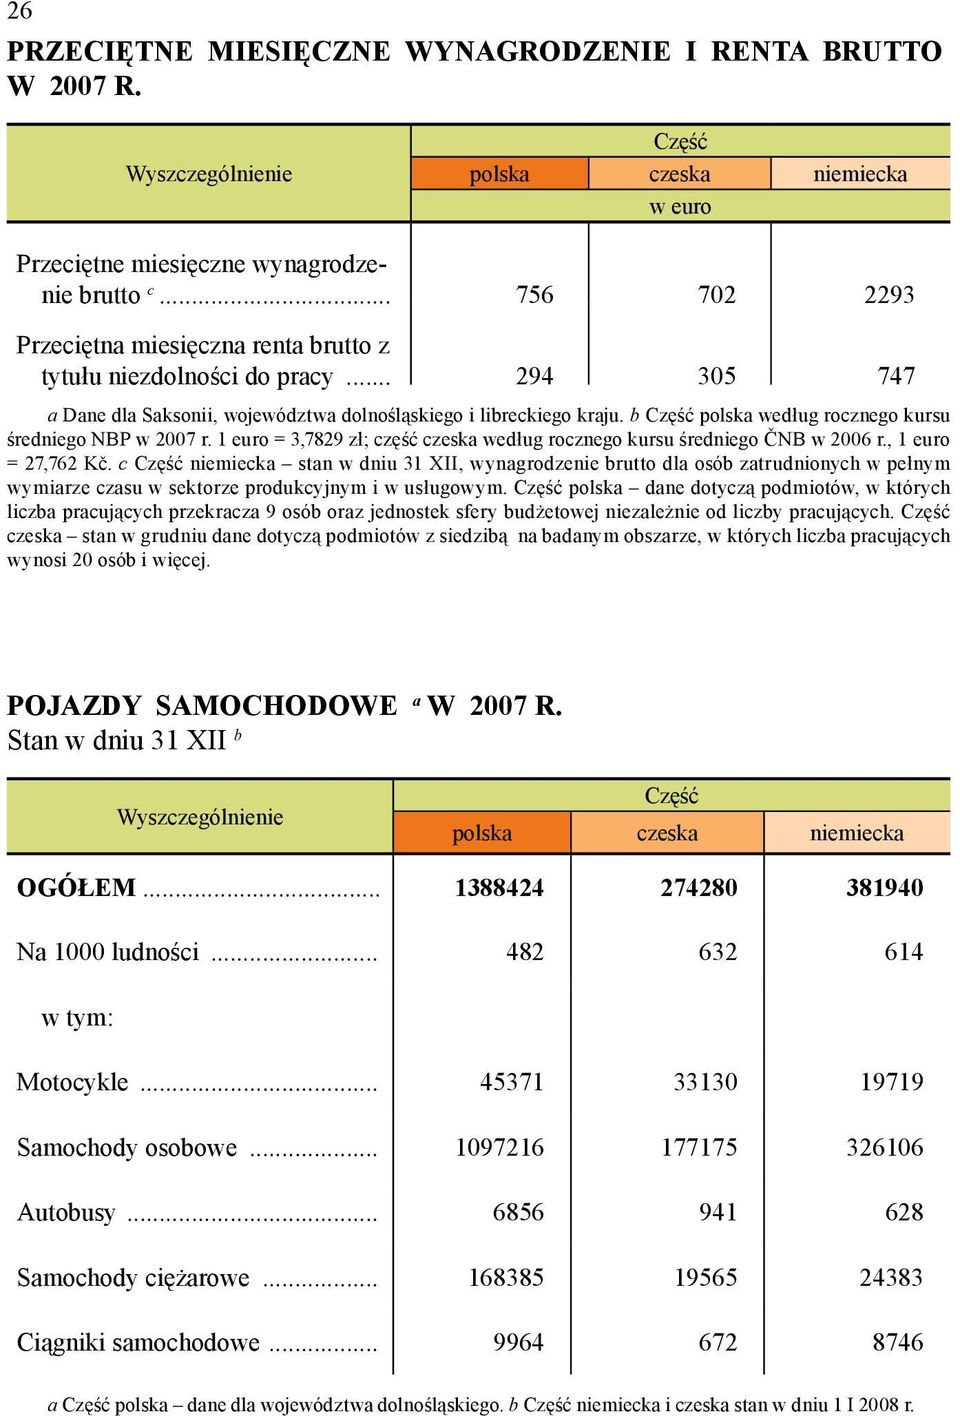 b Część polska według rocznego kursu średniego NBP w 2007 r. 1 euro = 3,7829 zł; część czeska według rocznego kursu średniego ČNB w 2006 r., 1 euro = 27,762 Kč.